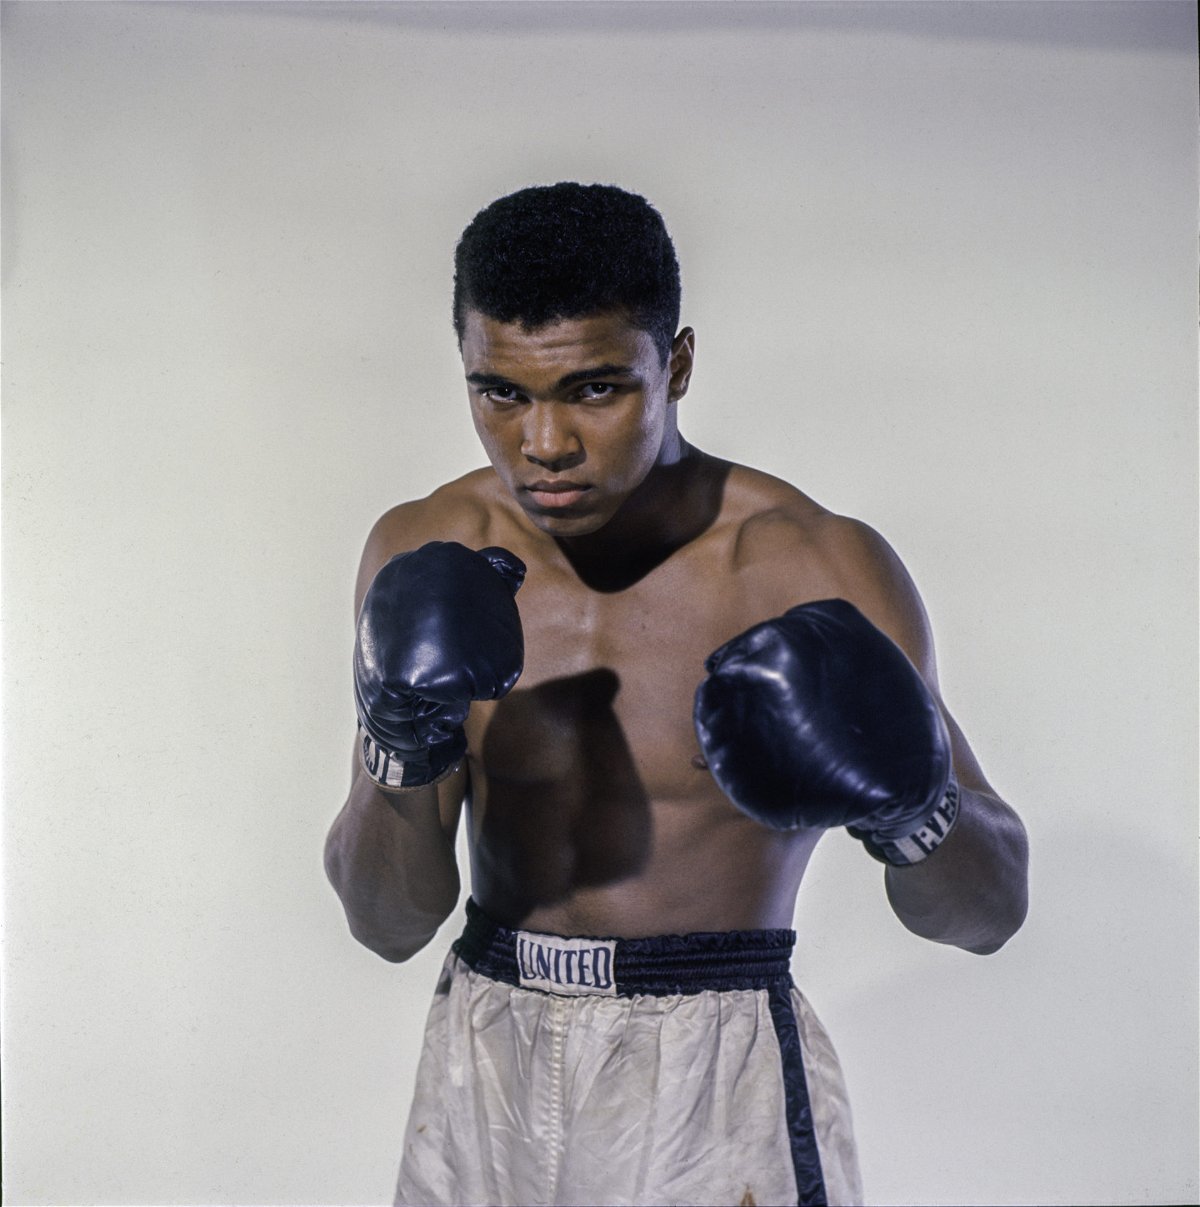 “[I Don’t Care] S’il a plongé, vous devez vraiment être tout à fait “: 58 ans après avoir créé la photo la plus virale de l’histoire de la boxe, le KO de Muhammad Ali de Sonny Liston rend les fans sceptiques à ce jour